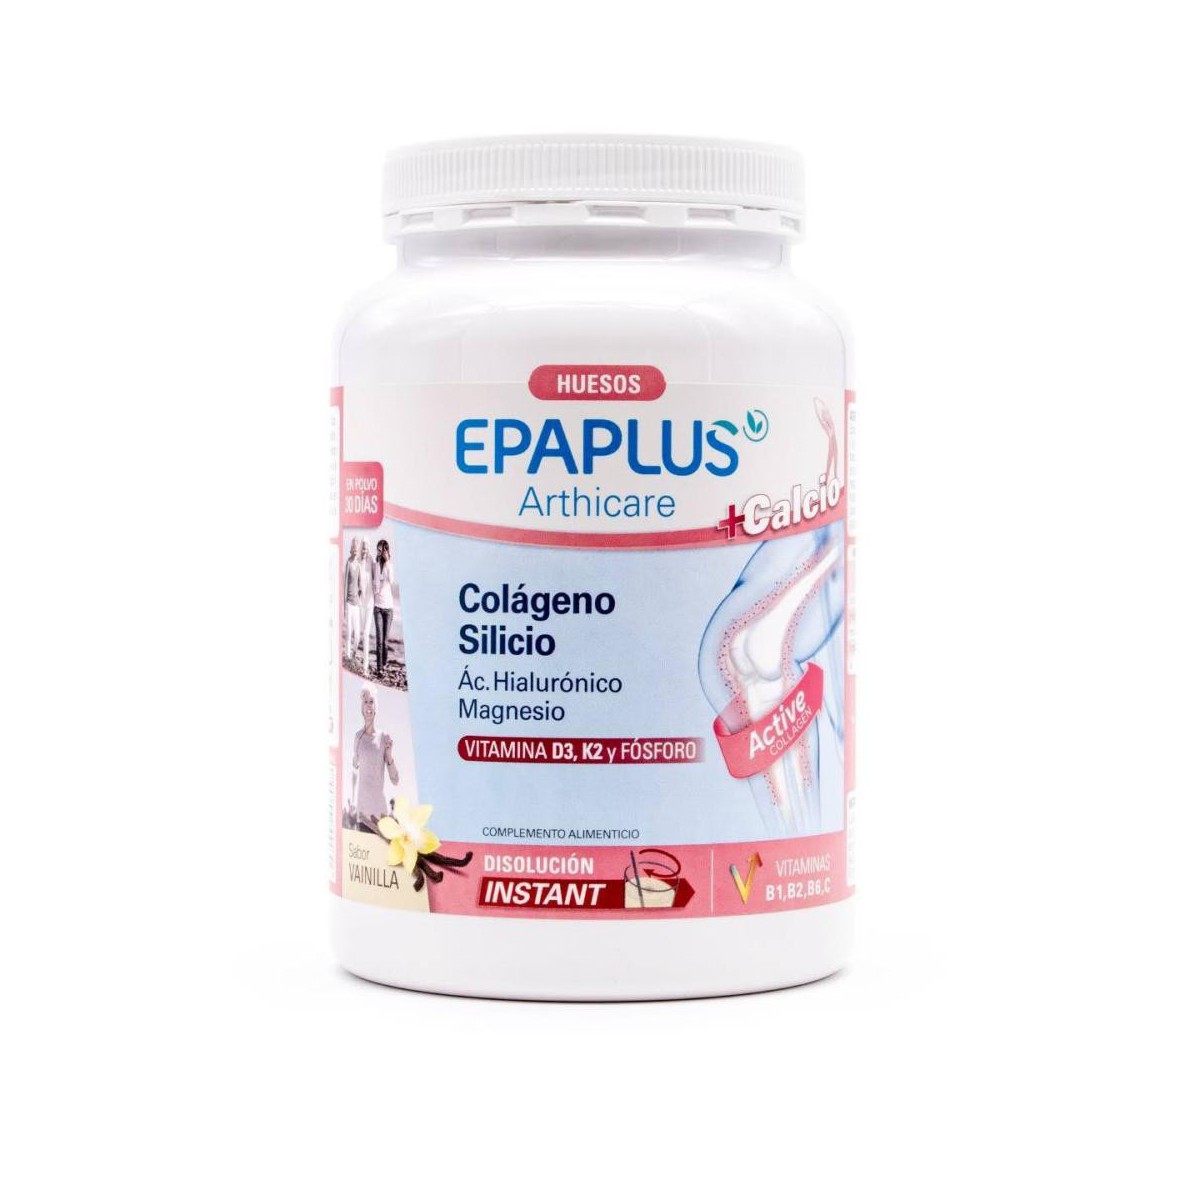 Epaplus Colágeno con Ácido Hialurónico, Calcio y Vitamina D